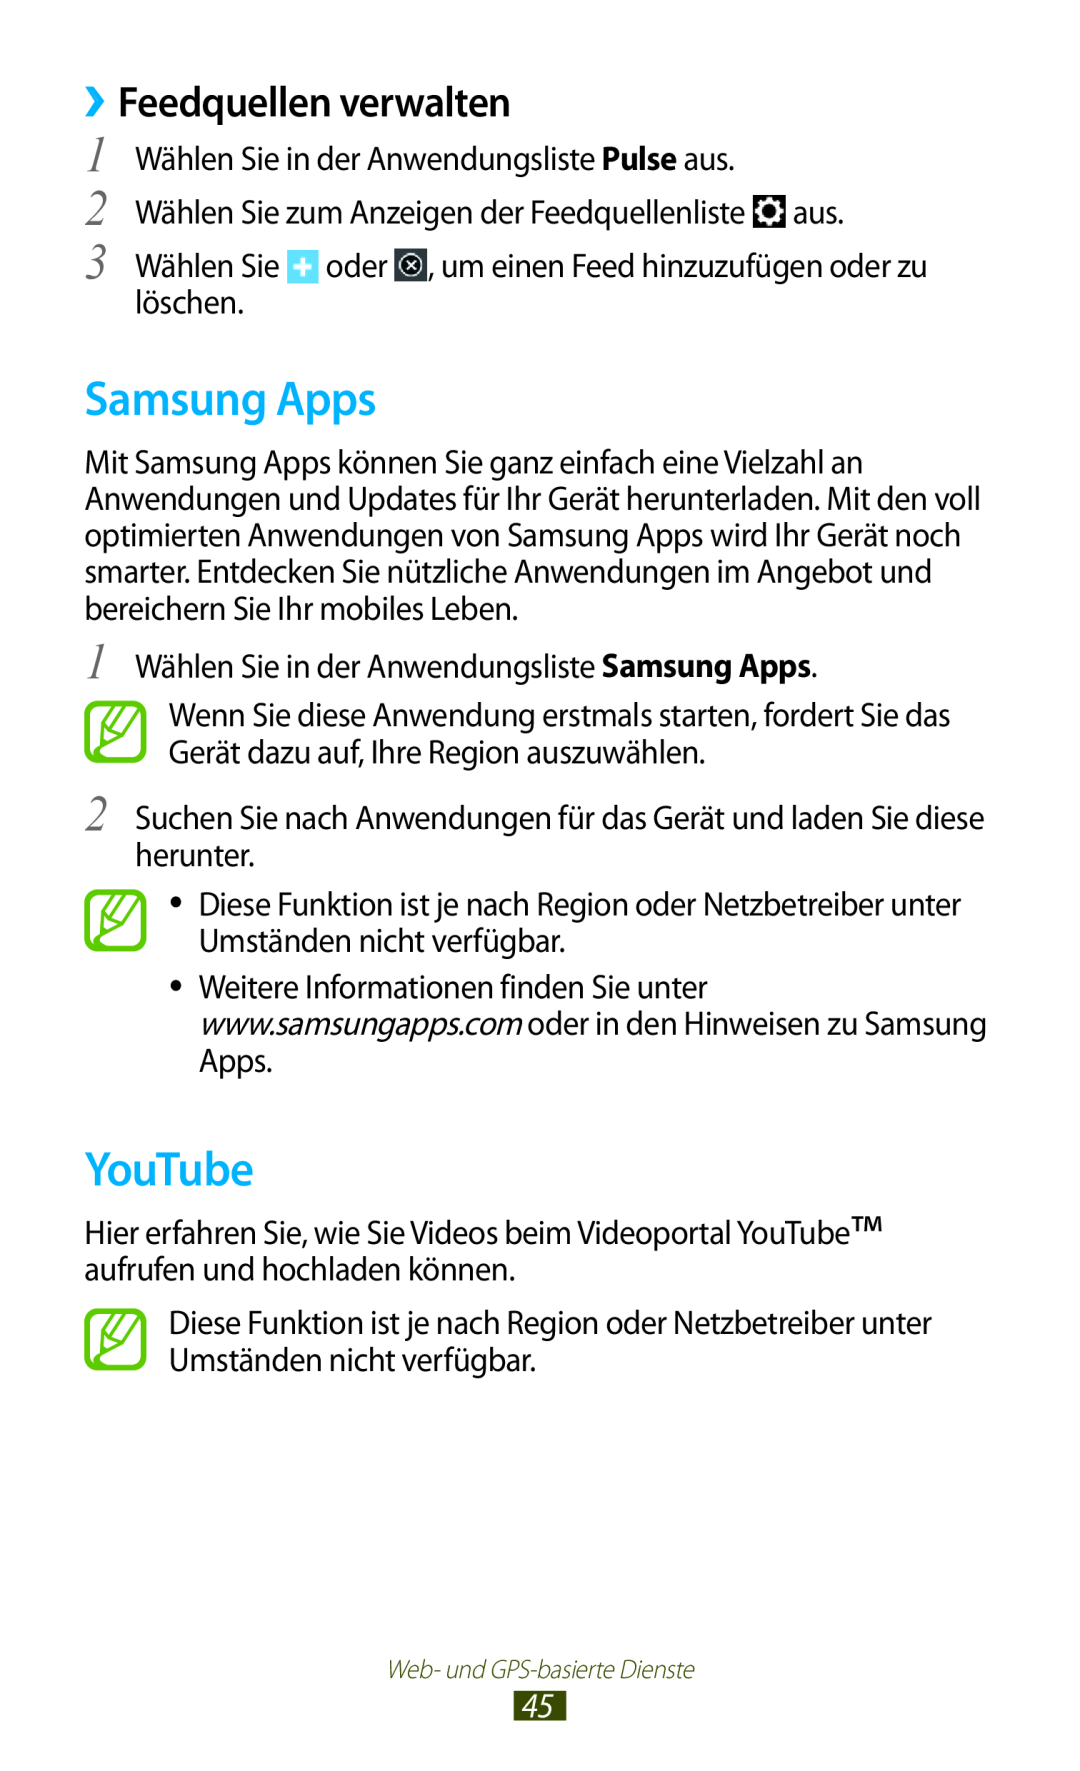 Samsung GT-P7511UWADBT, GT-P7511UWEDBT, GT-P7511UWDDBT, GT-P7511FKADBT manual Samsung Apps, YouTube, ››Feedquellen verwalten 